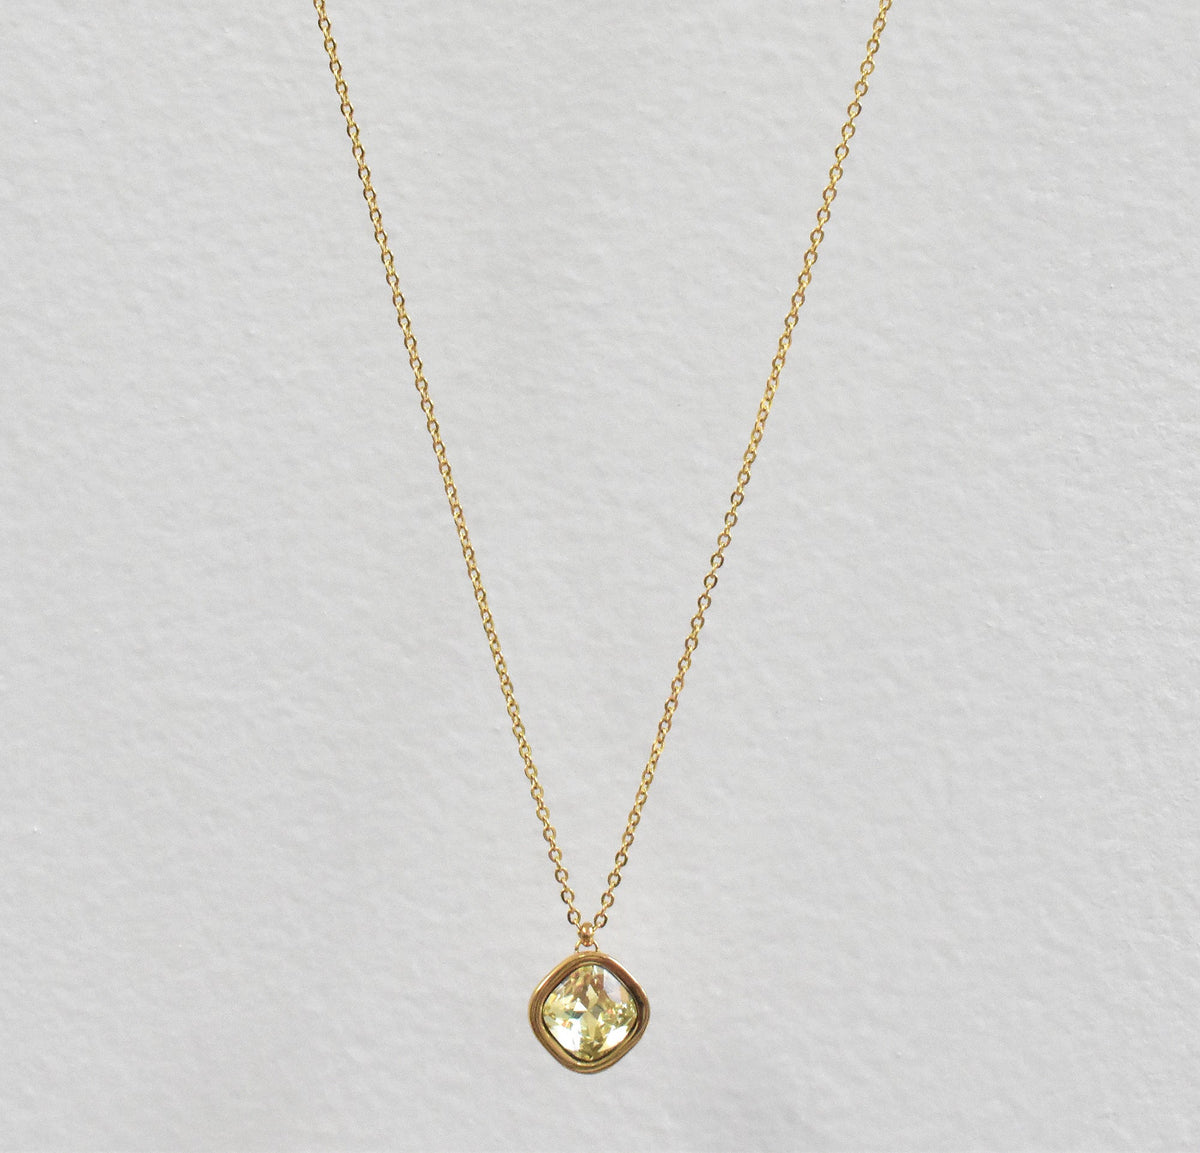 peridot necklace waterproof gold jewelry